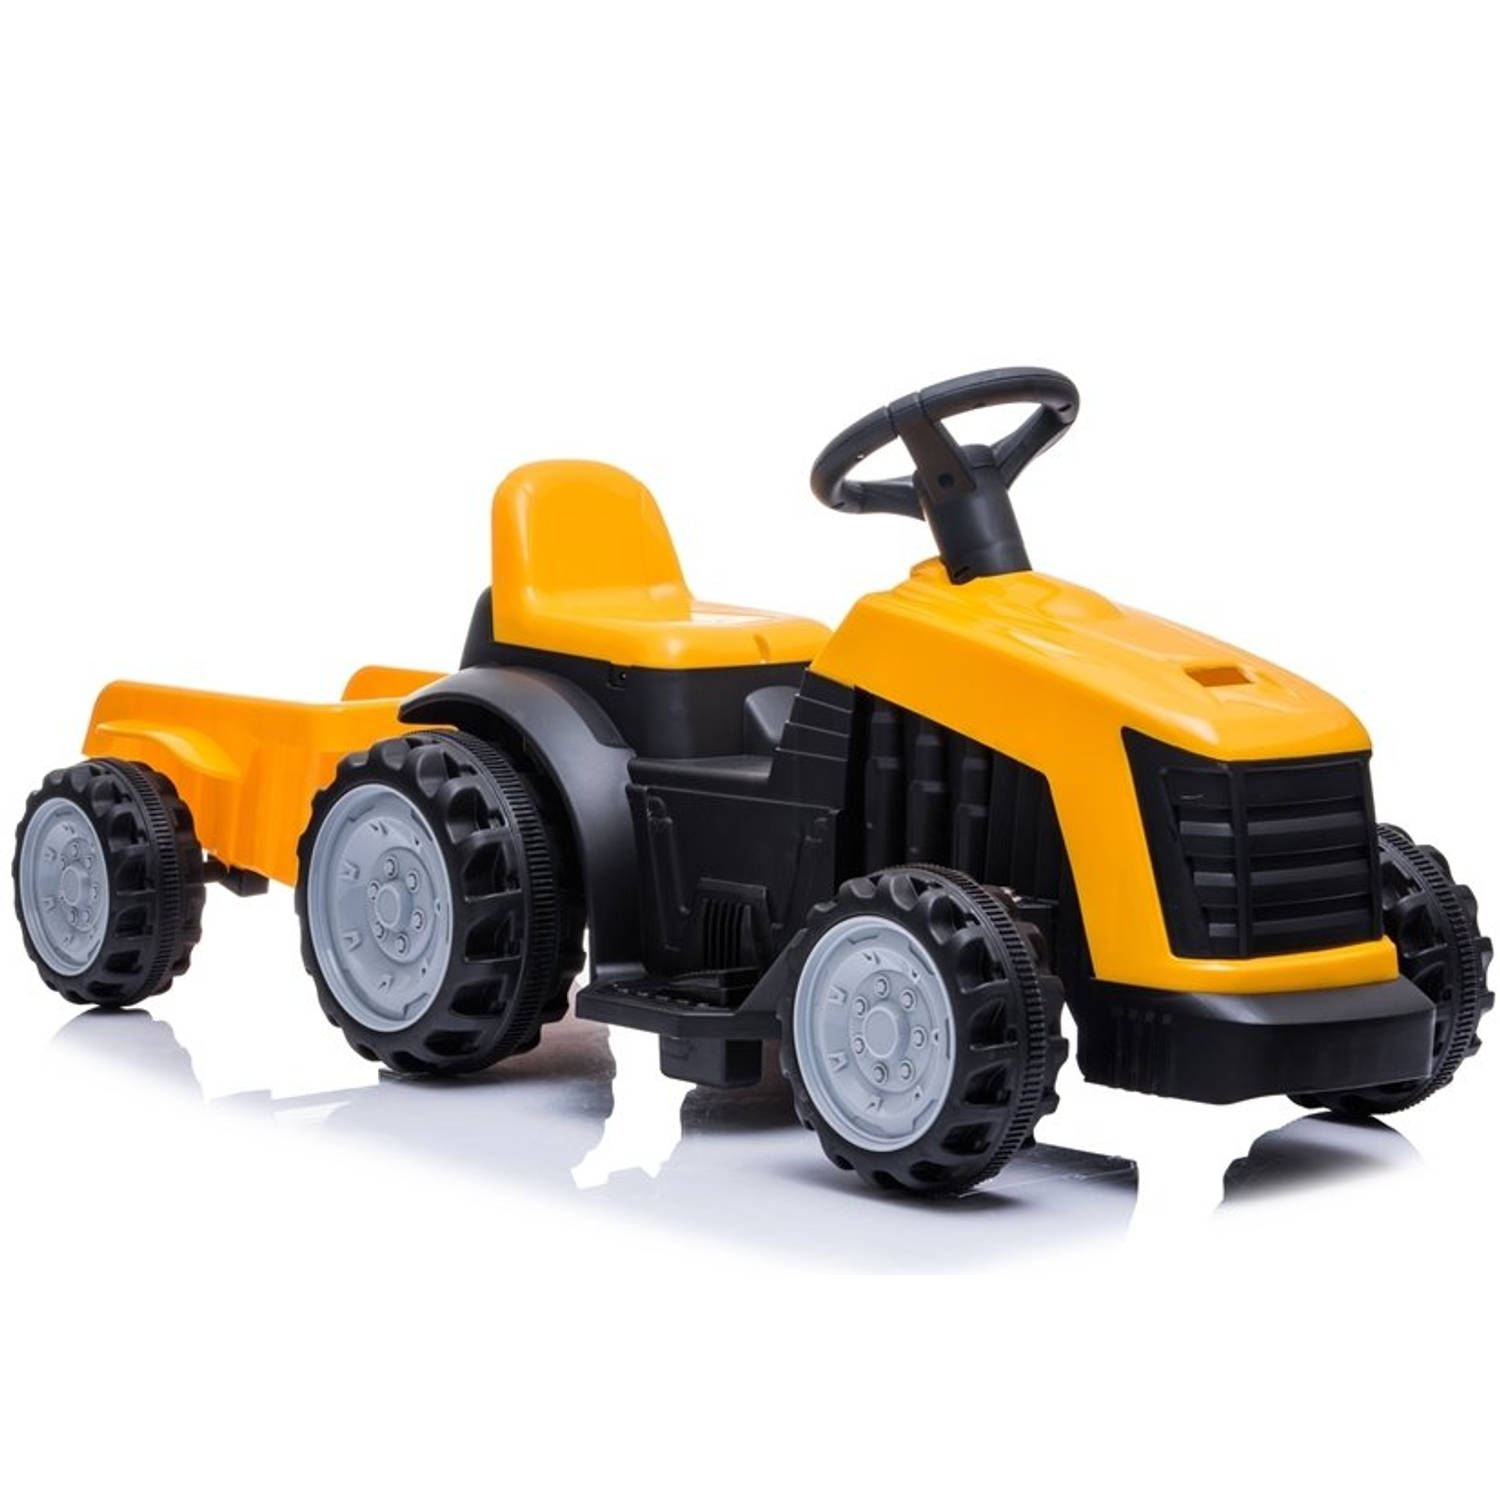 Elektrische kinder tractor geel met trailer - accu voertuig voor kinderen tot 25kg max 2 - 4km/h - inclusief aanhanger - 6V - voor en achteruit - remt automatisch al gas word losge